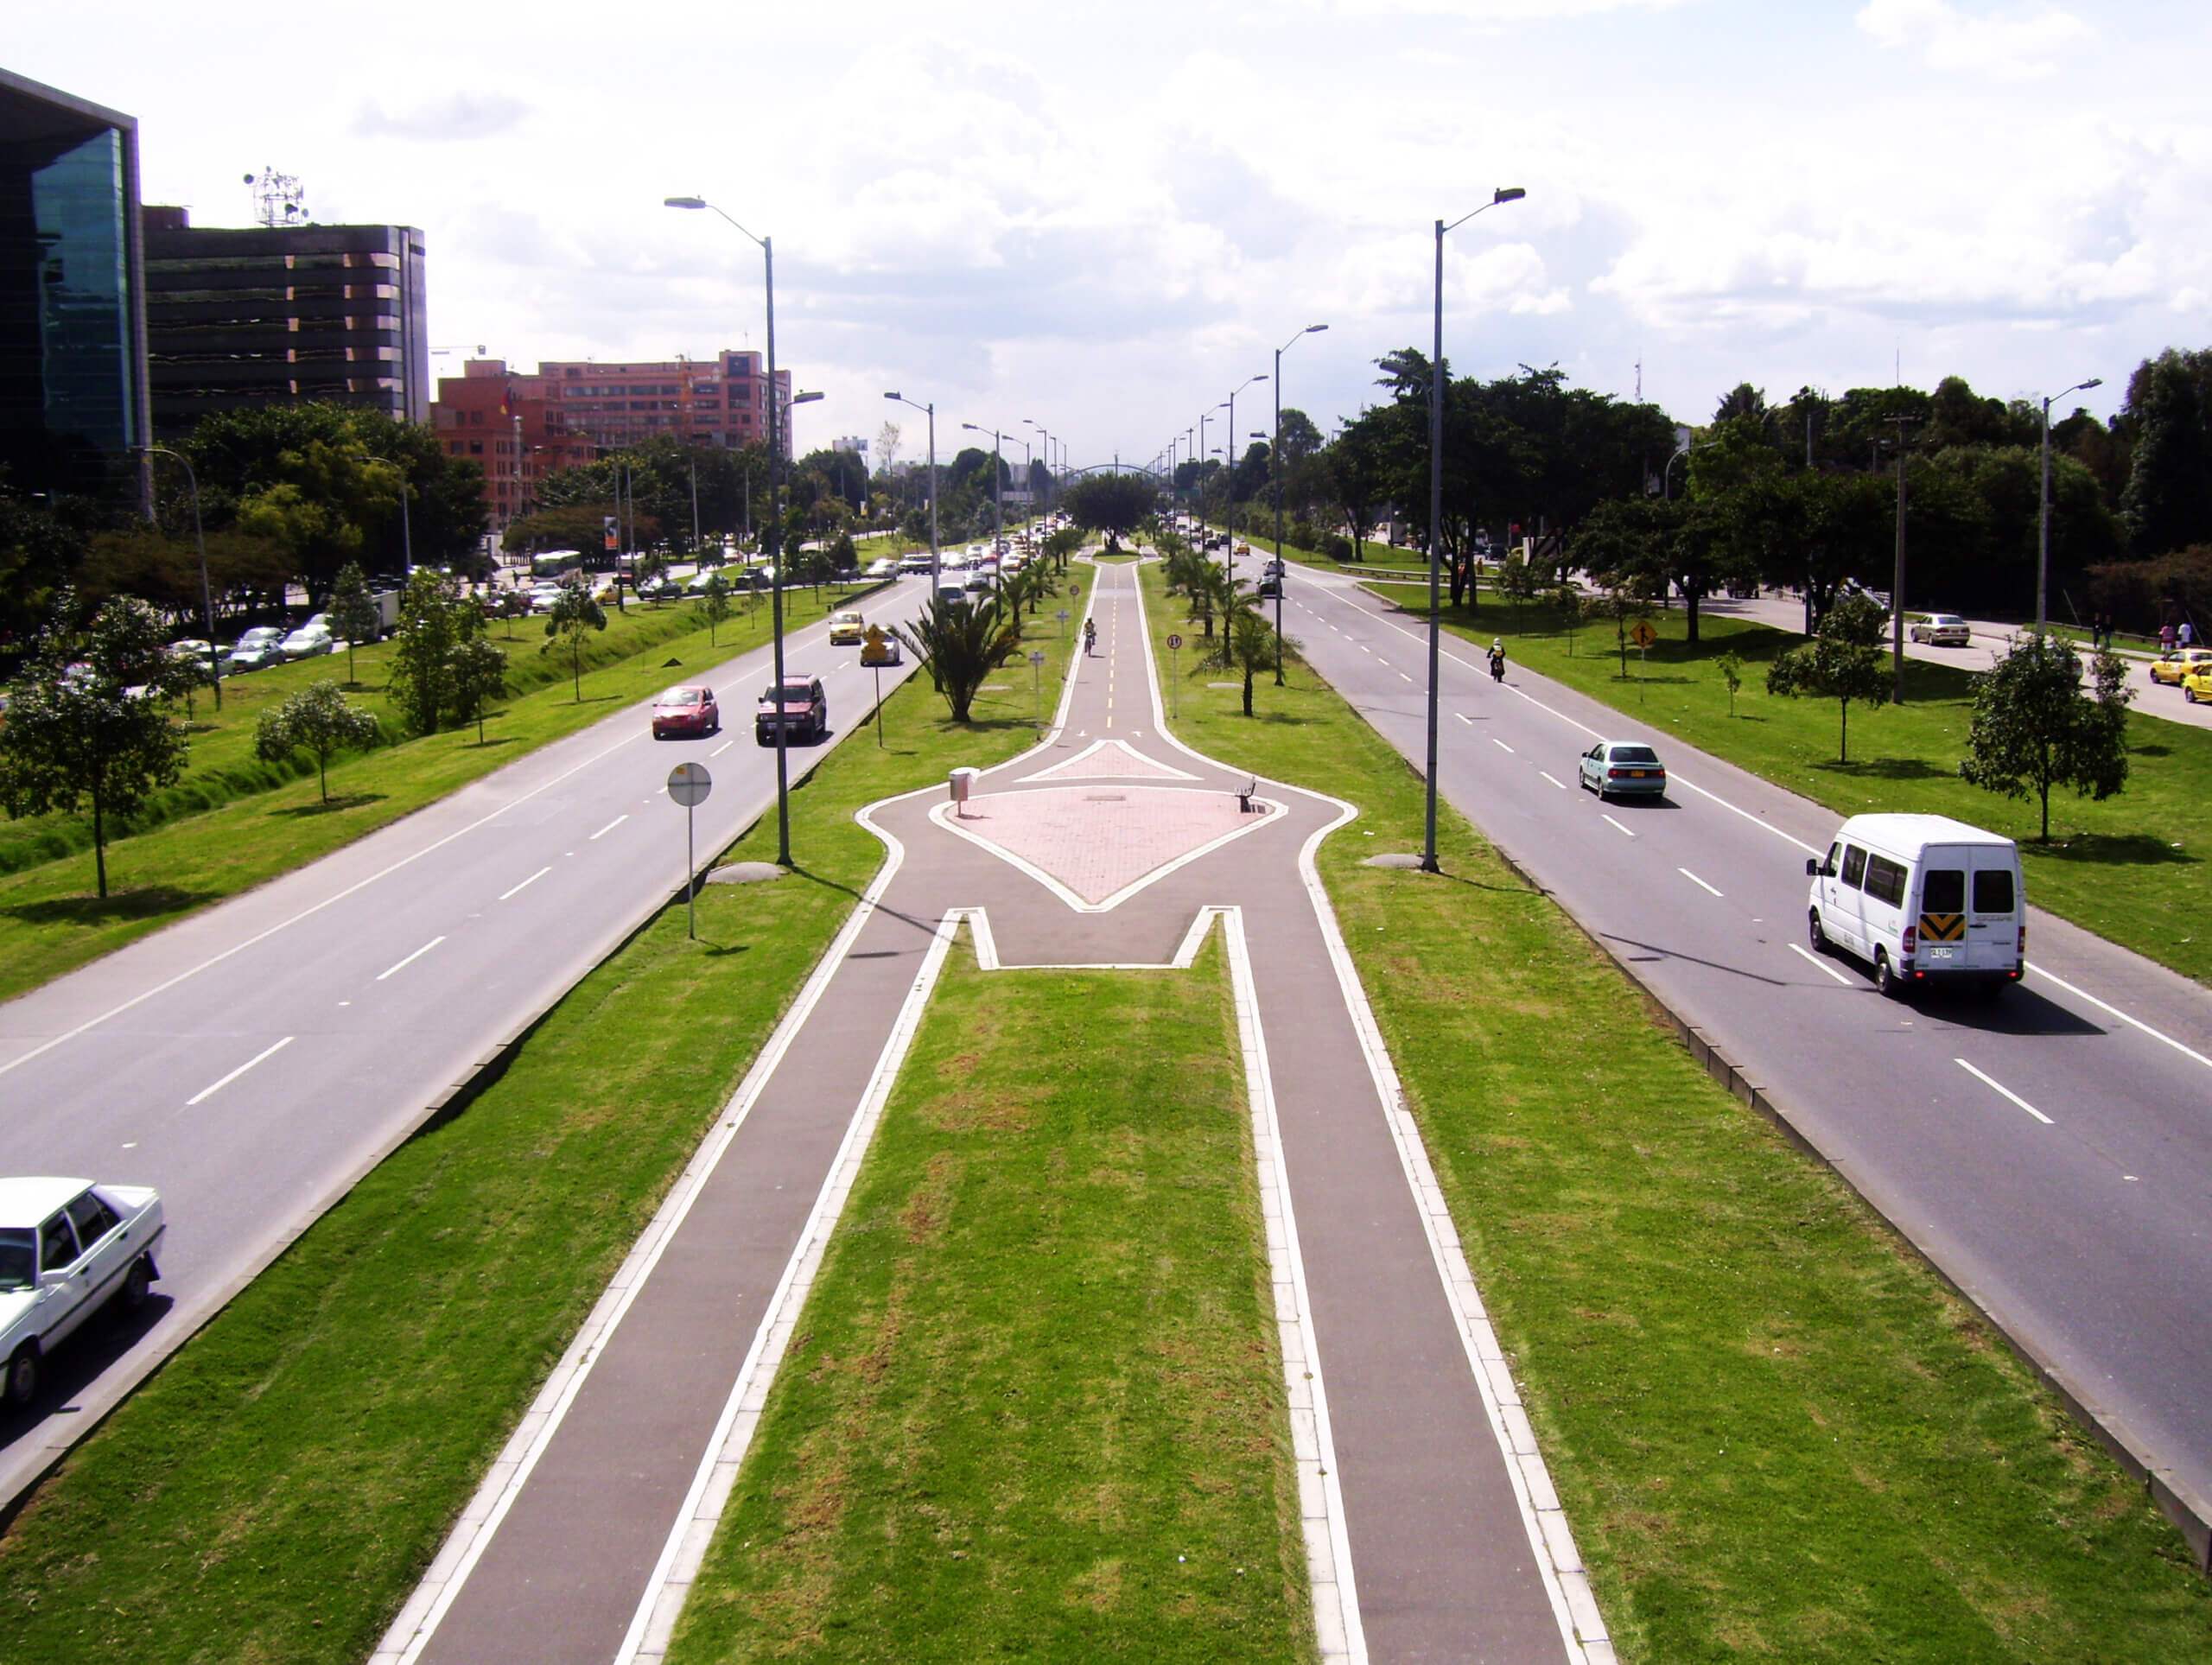 Cierre financiero por parte de empresa china atrasa el diseño del metro de Bogotá